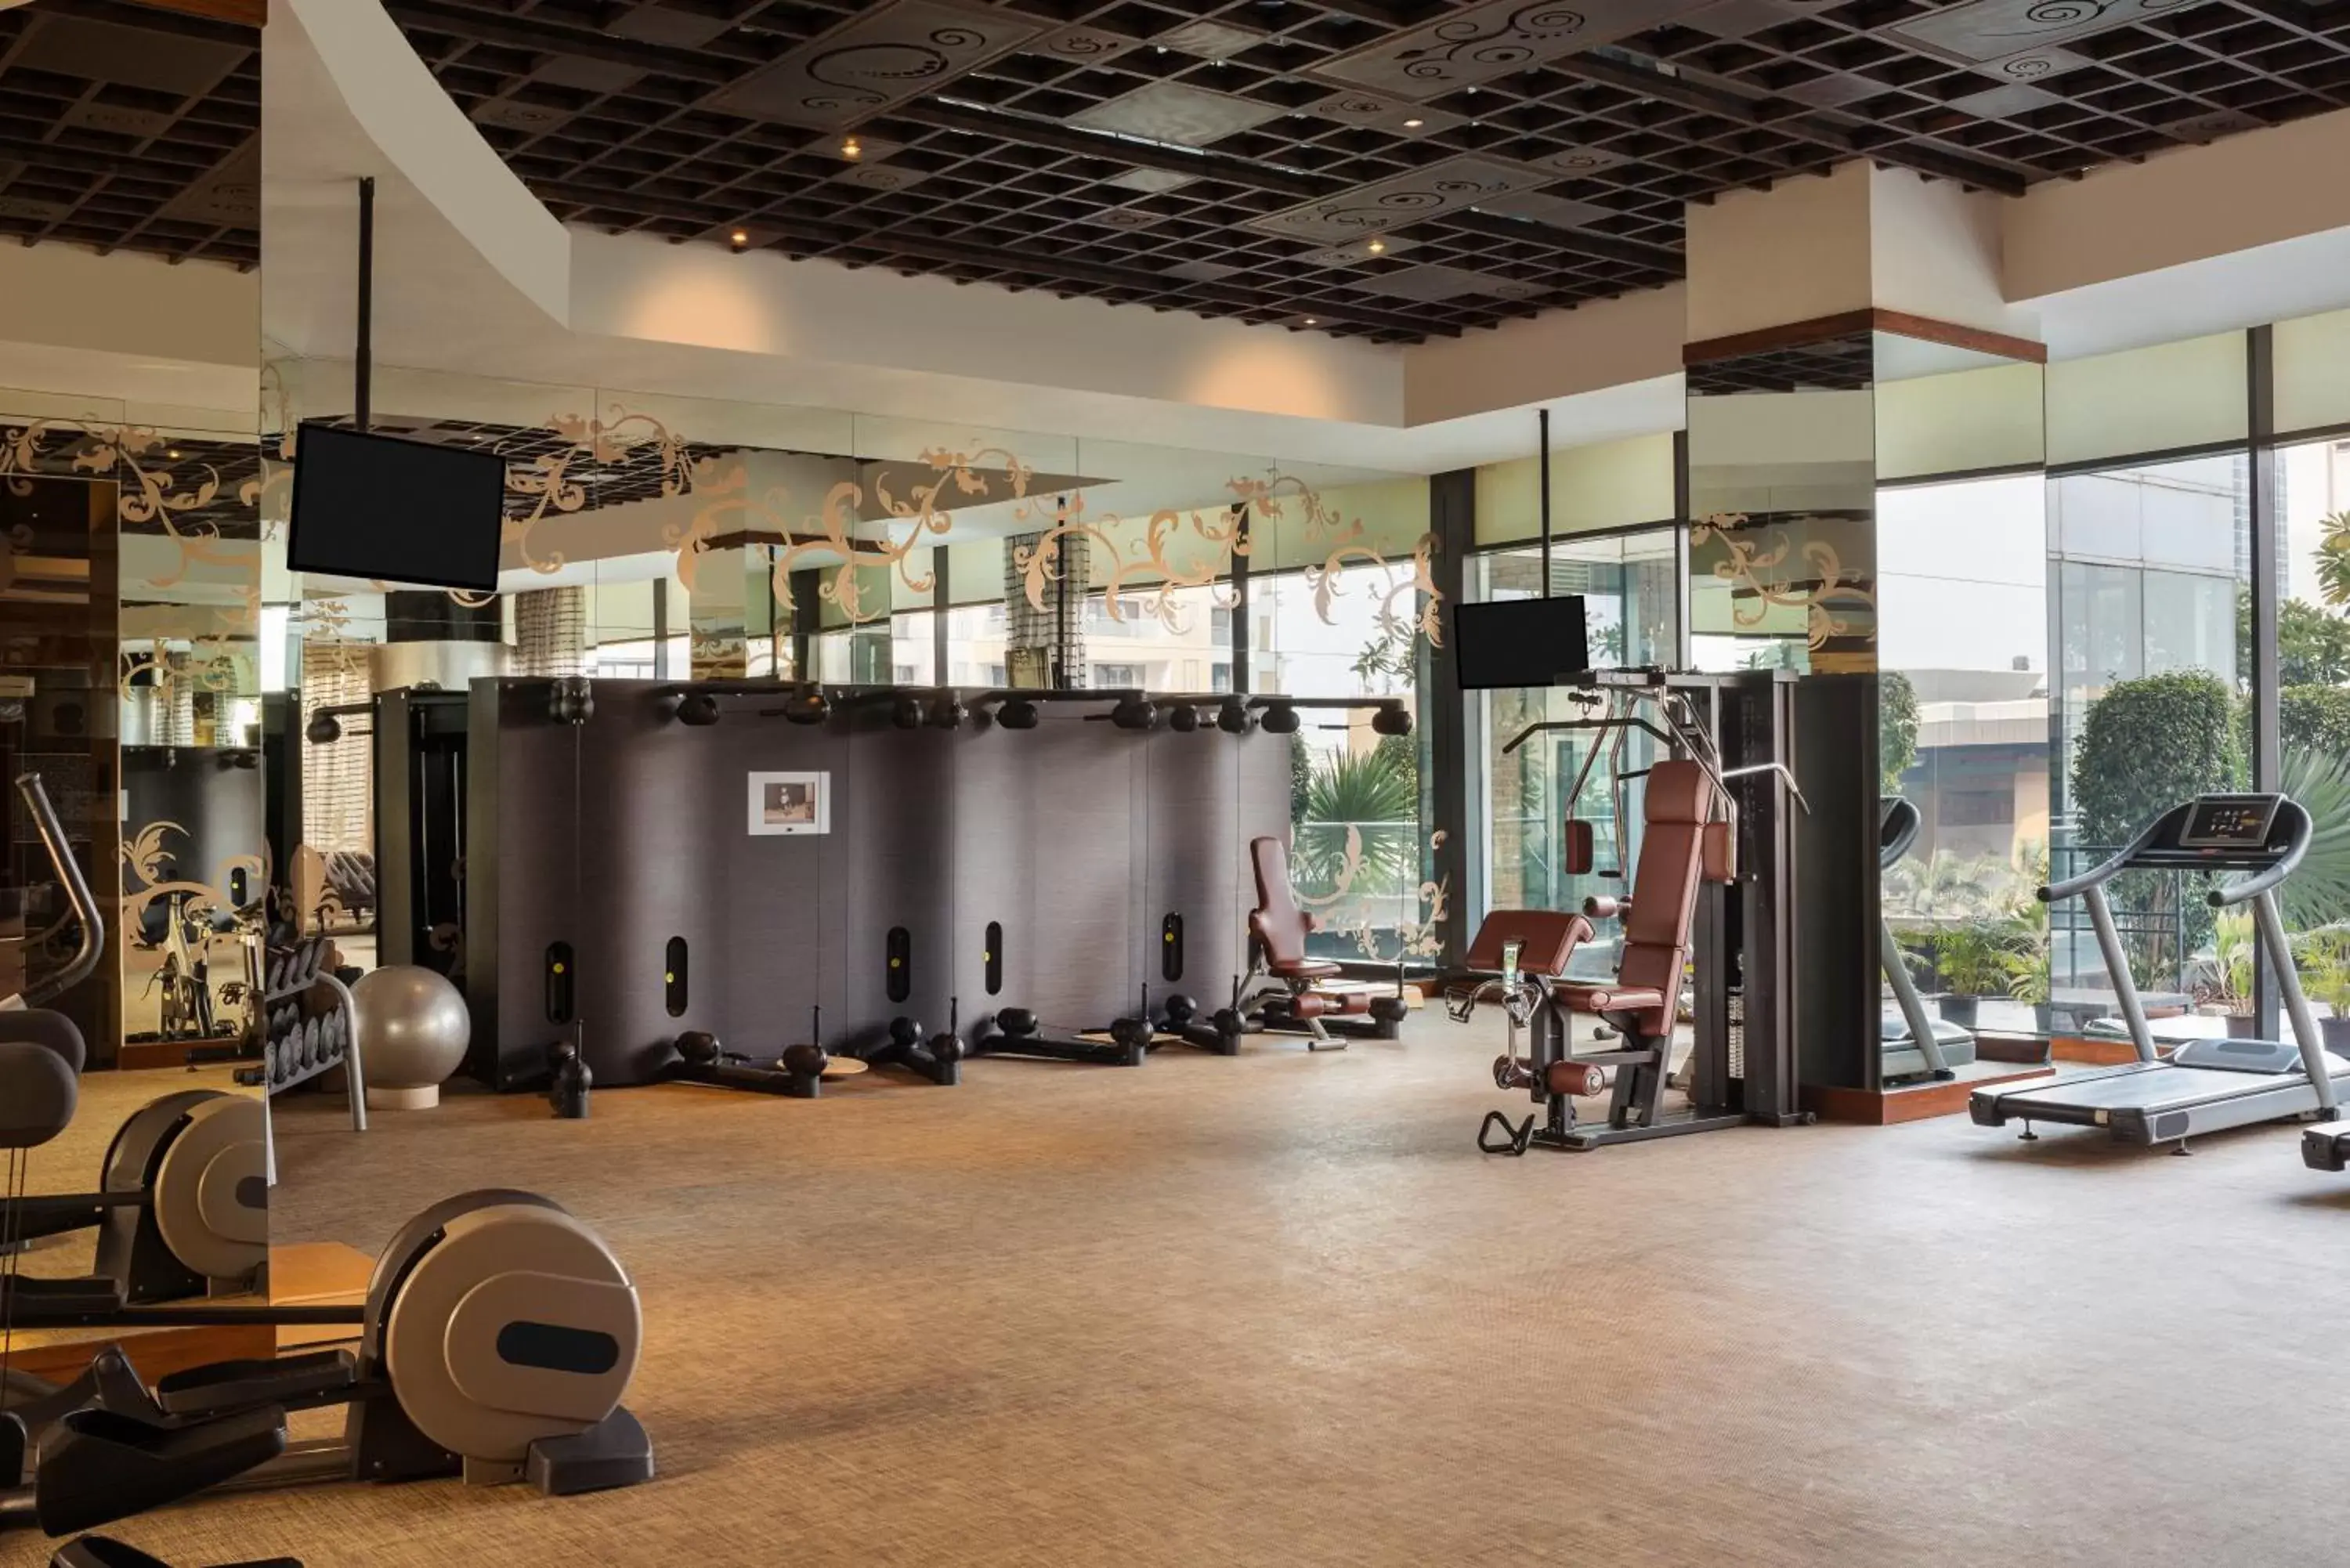 Fitness centre/facilities, Fitness Center/Facilities in Sofitel Mumbai BKC